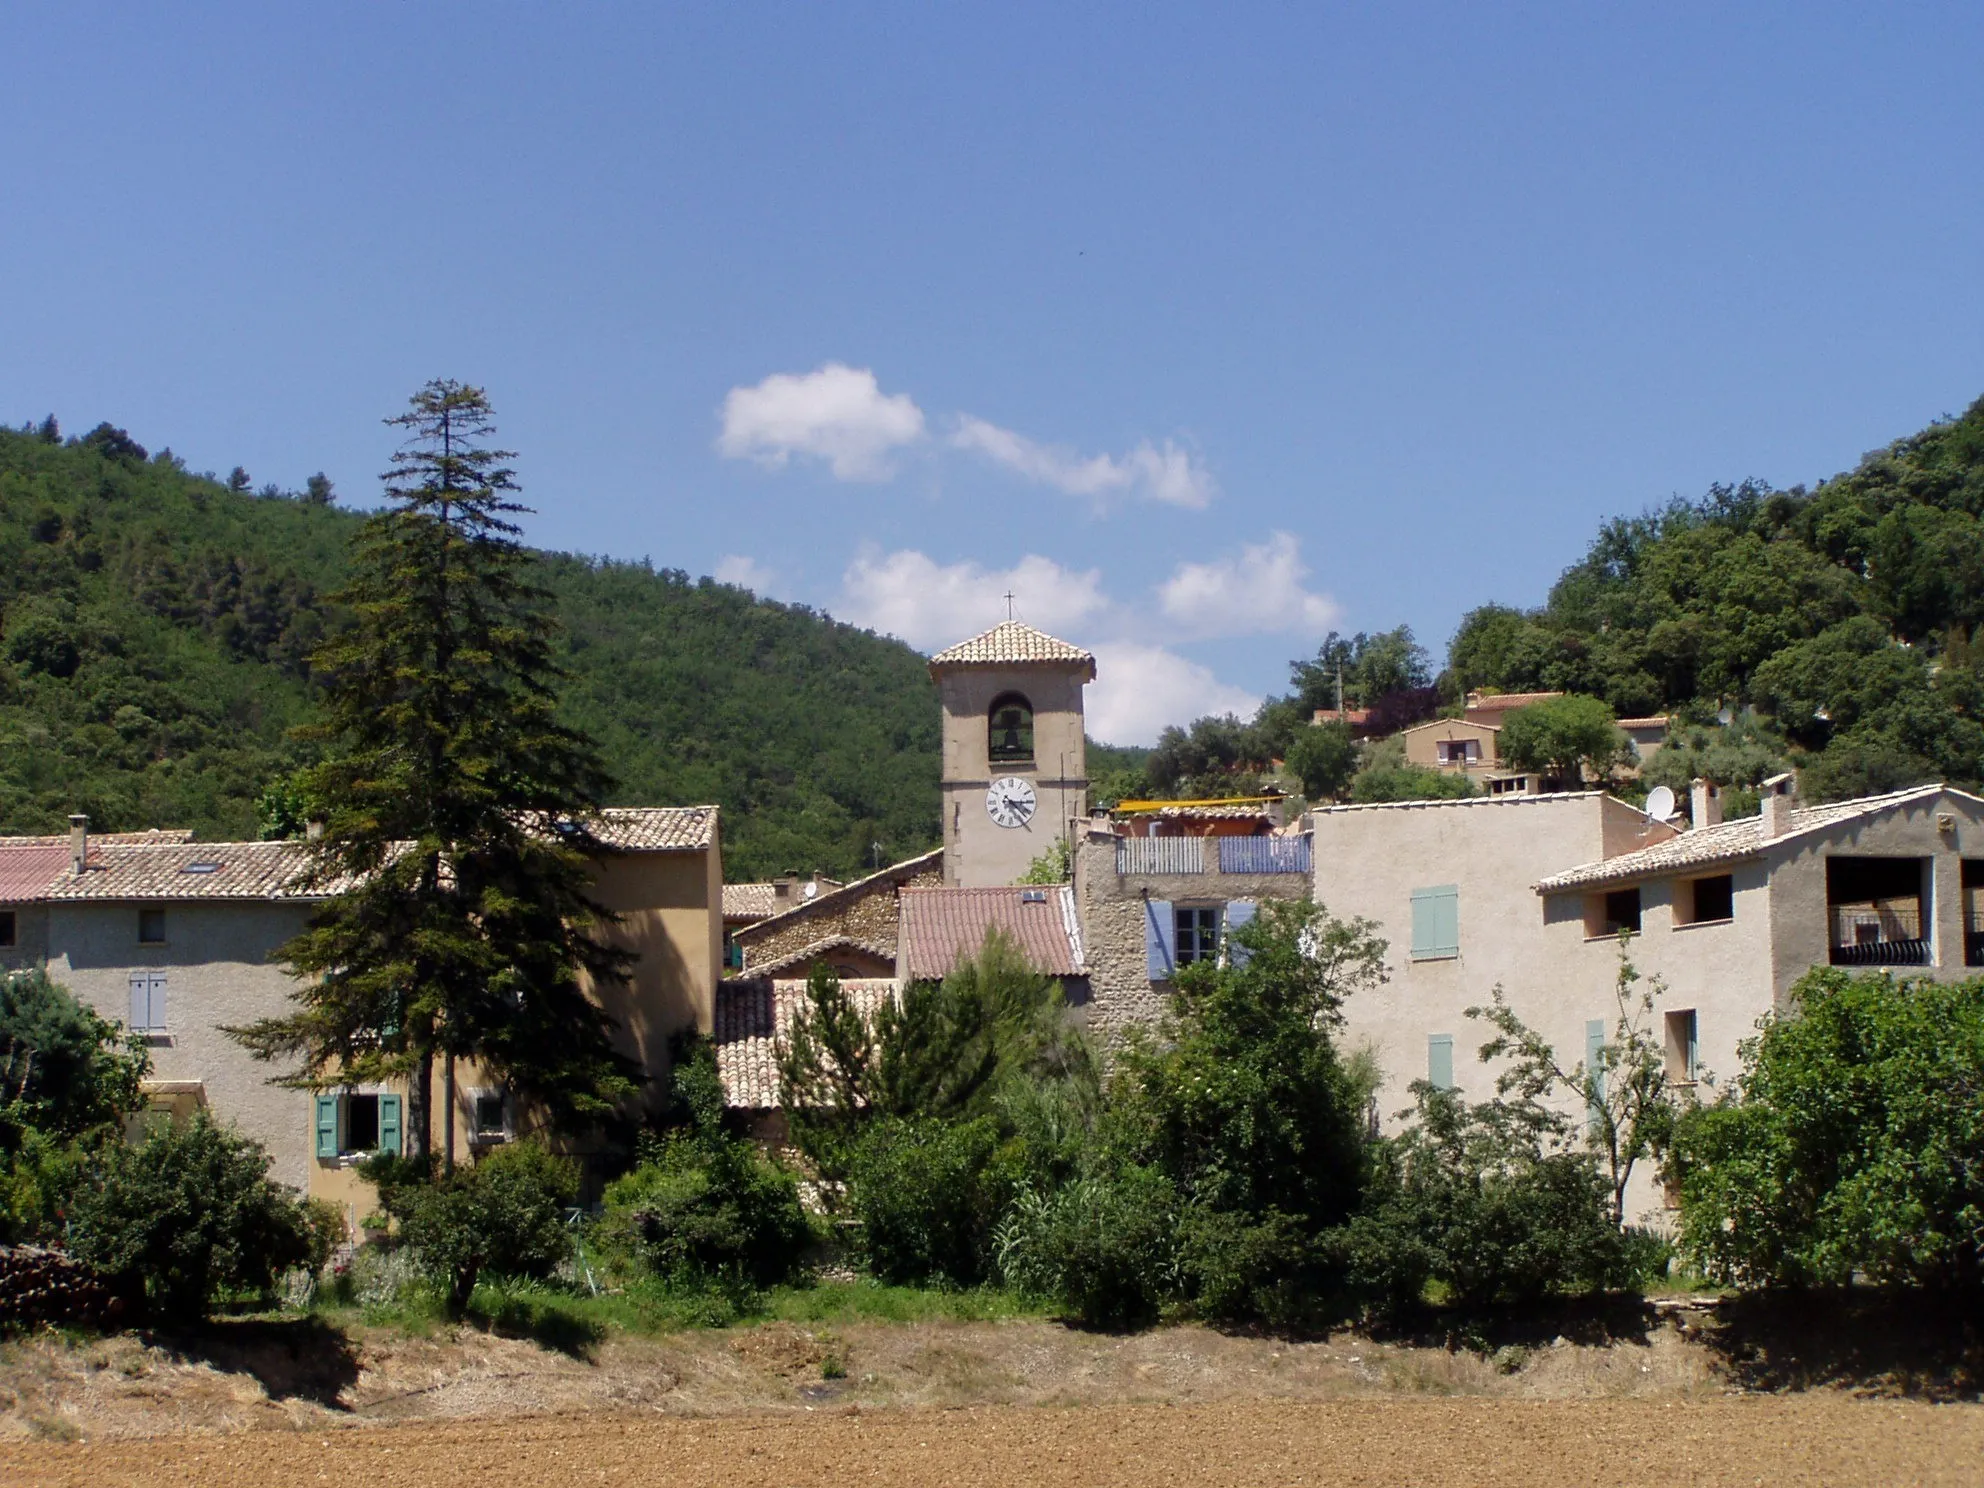 Photo showing: The village of Le Castellet